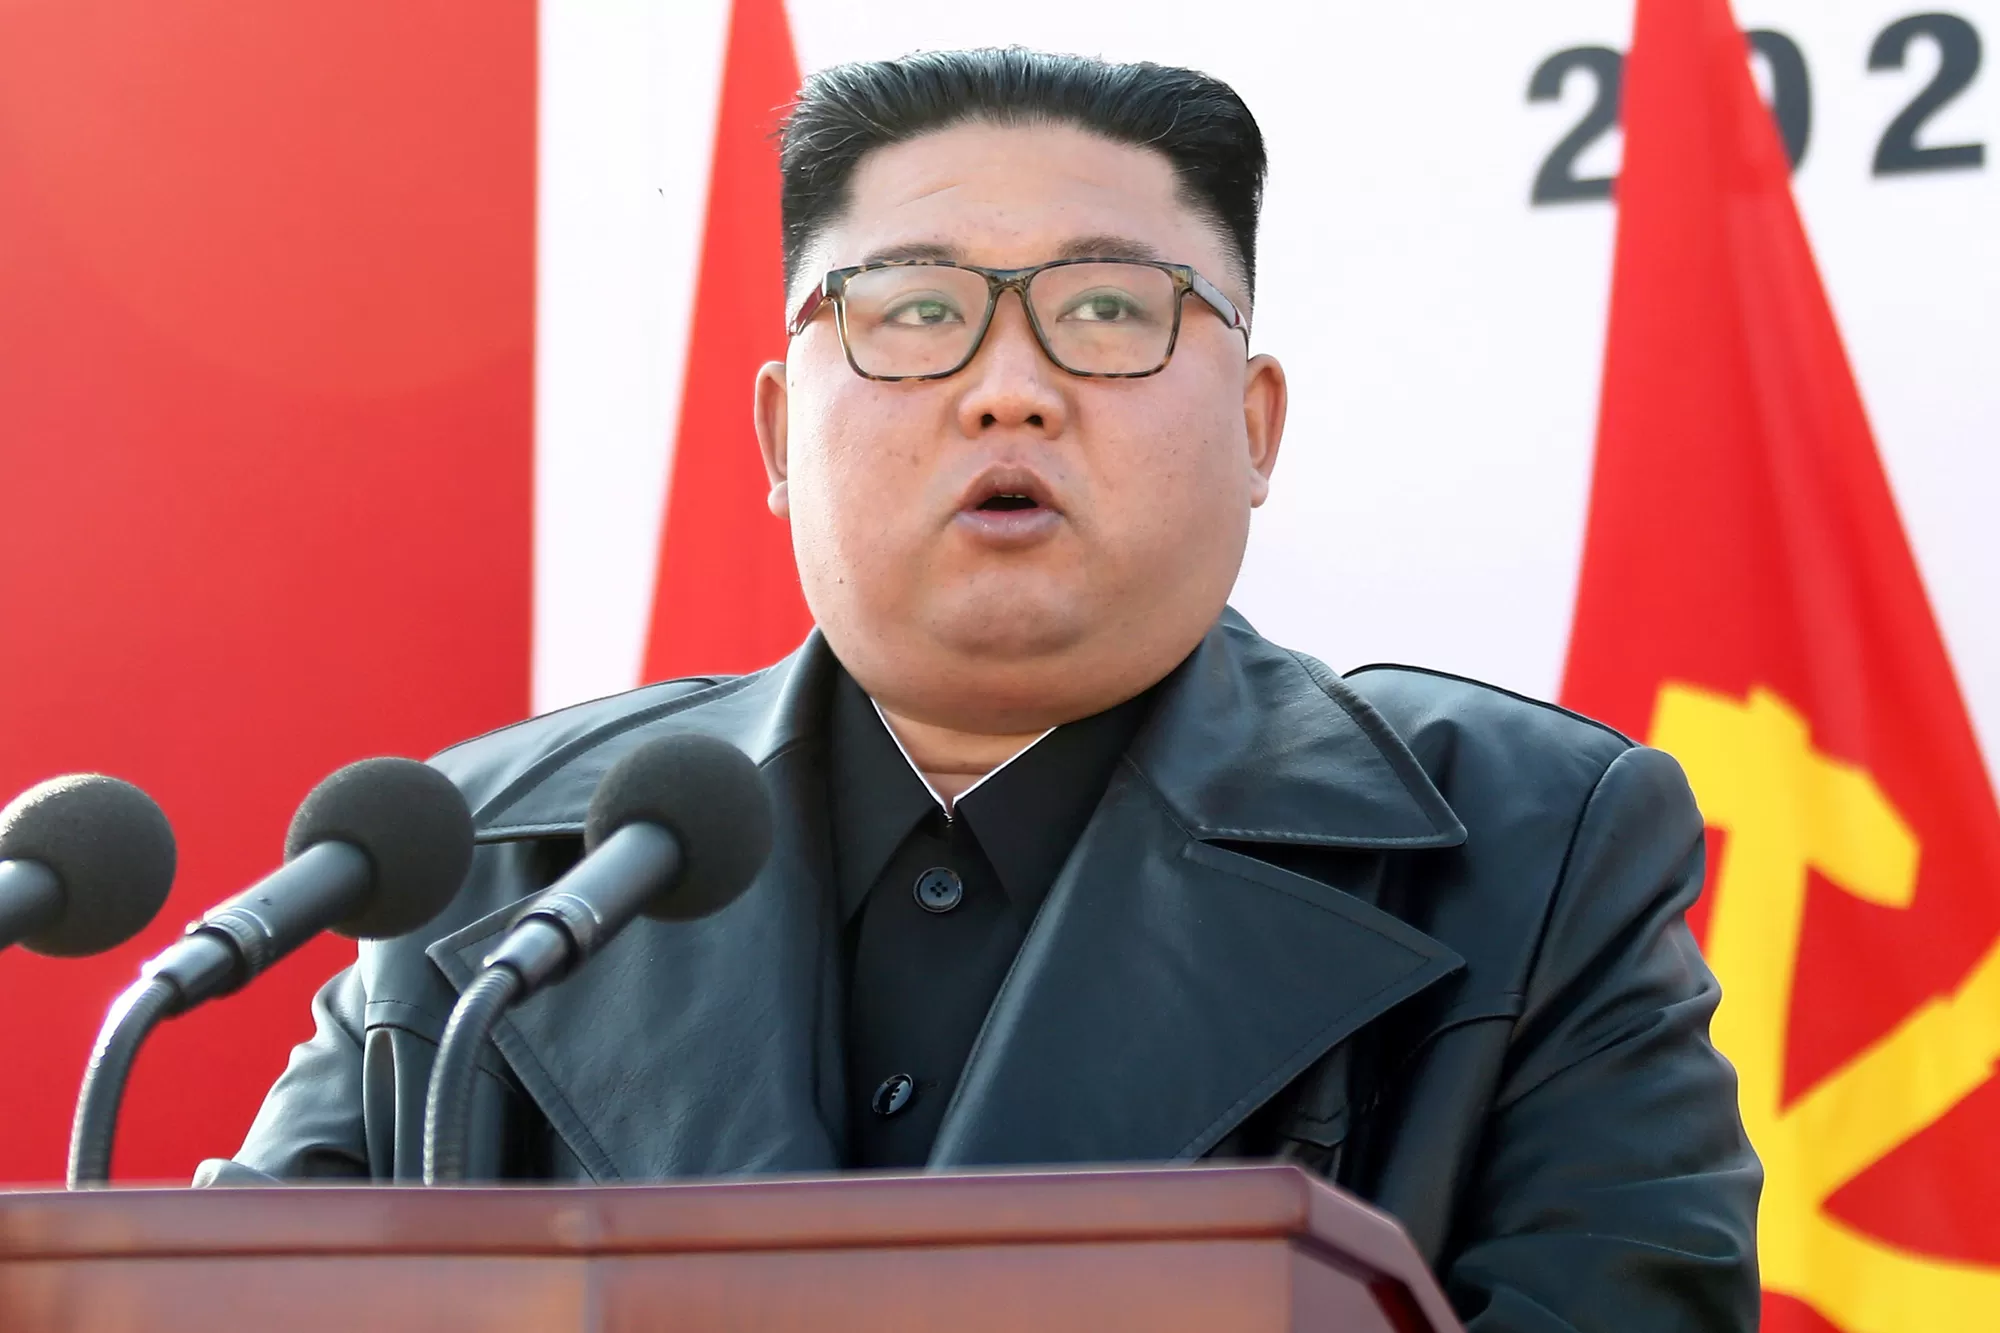 رئيس كوريا الشمالية كيم جونغ أون